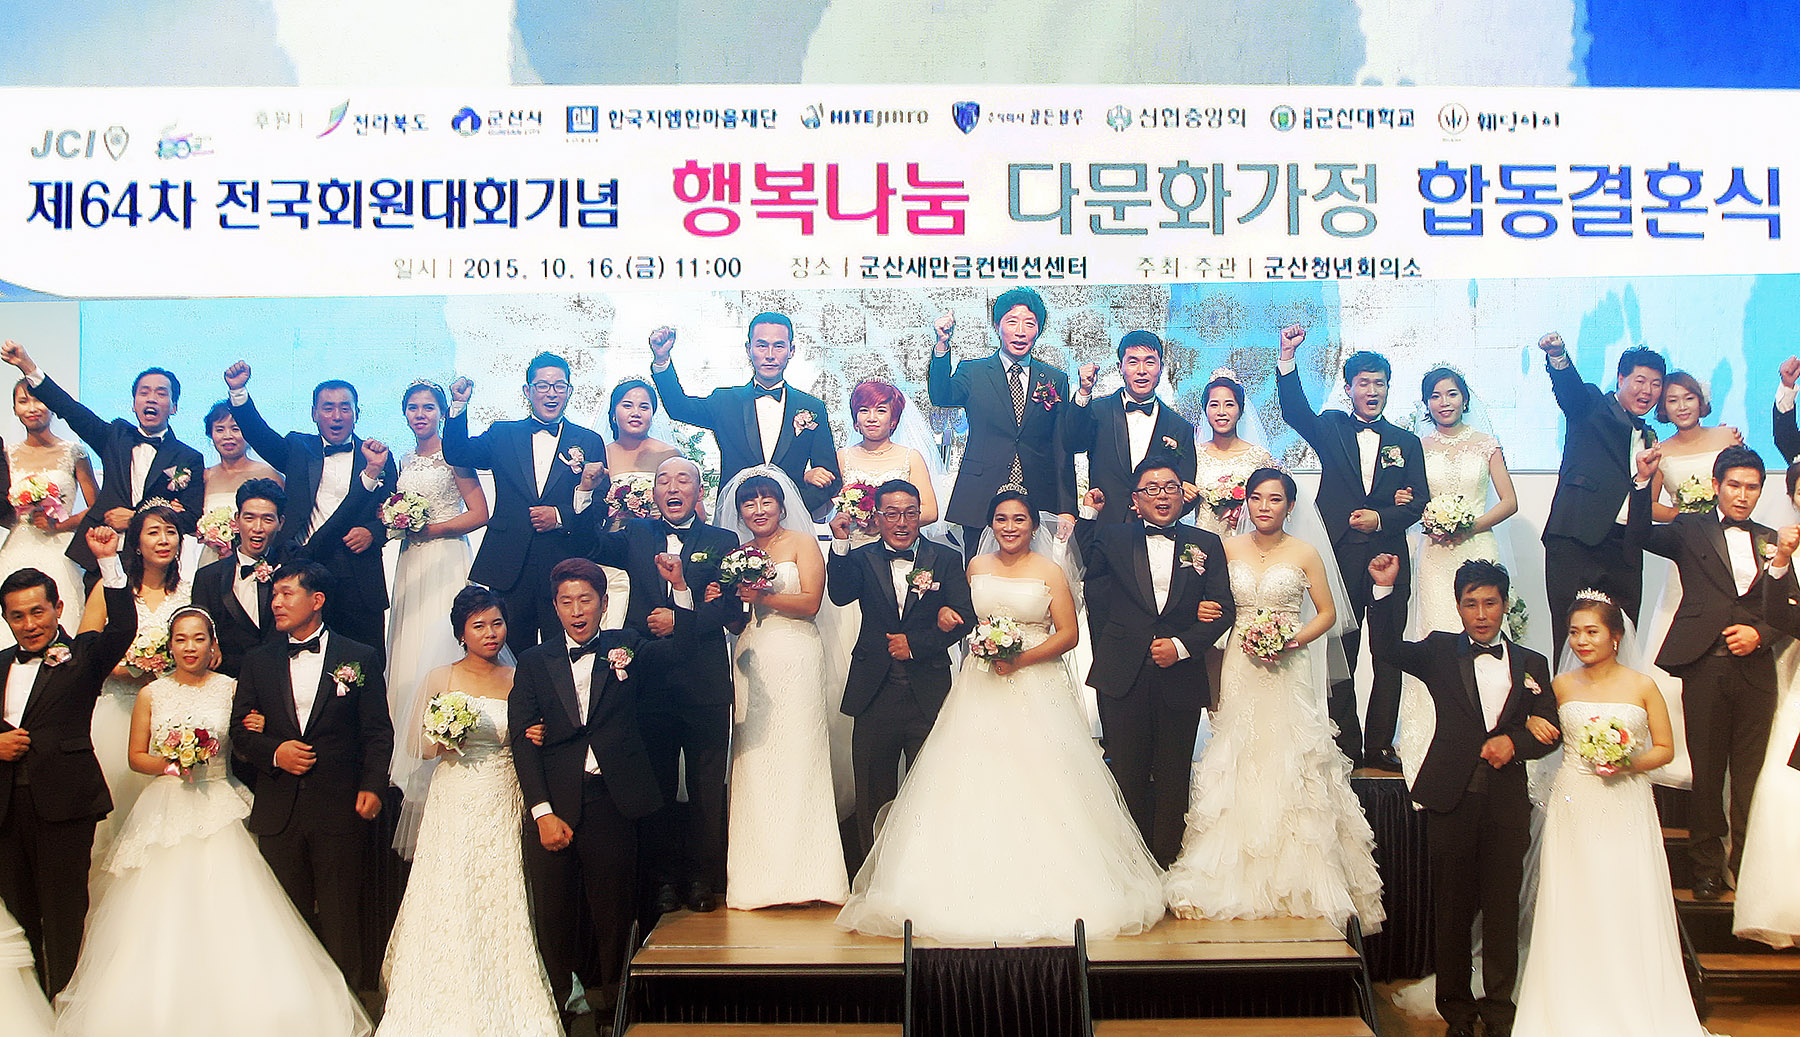 16일 한국GM 군산공장이 위치한 지역 컨벤션센터에서 열린 ‘다문화가족 이웃사랑 합동결혼식’에서 결혼식을 올린 다문화 가족 부부들의 모습.  한국GM 제공